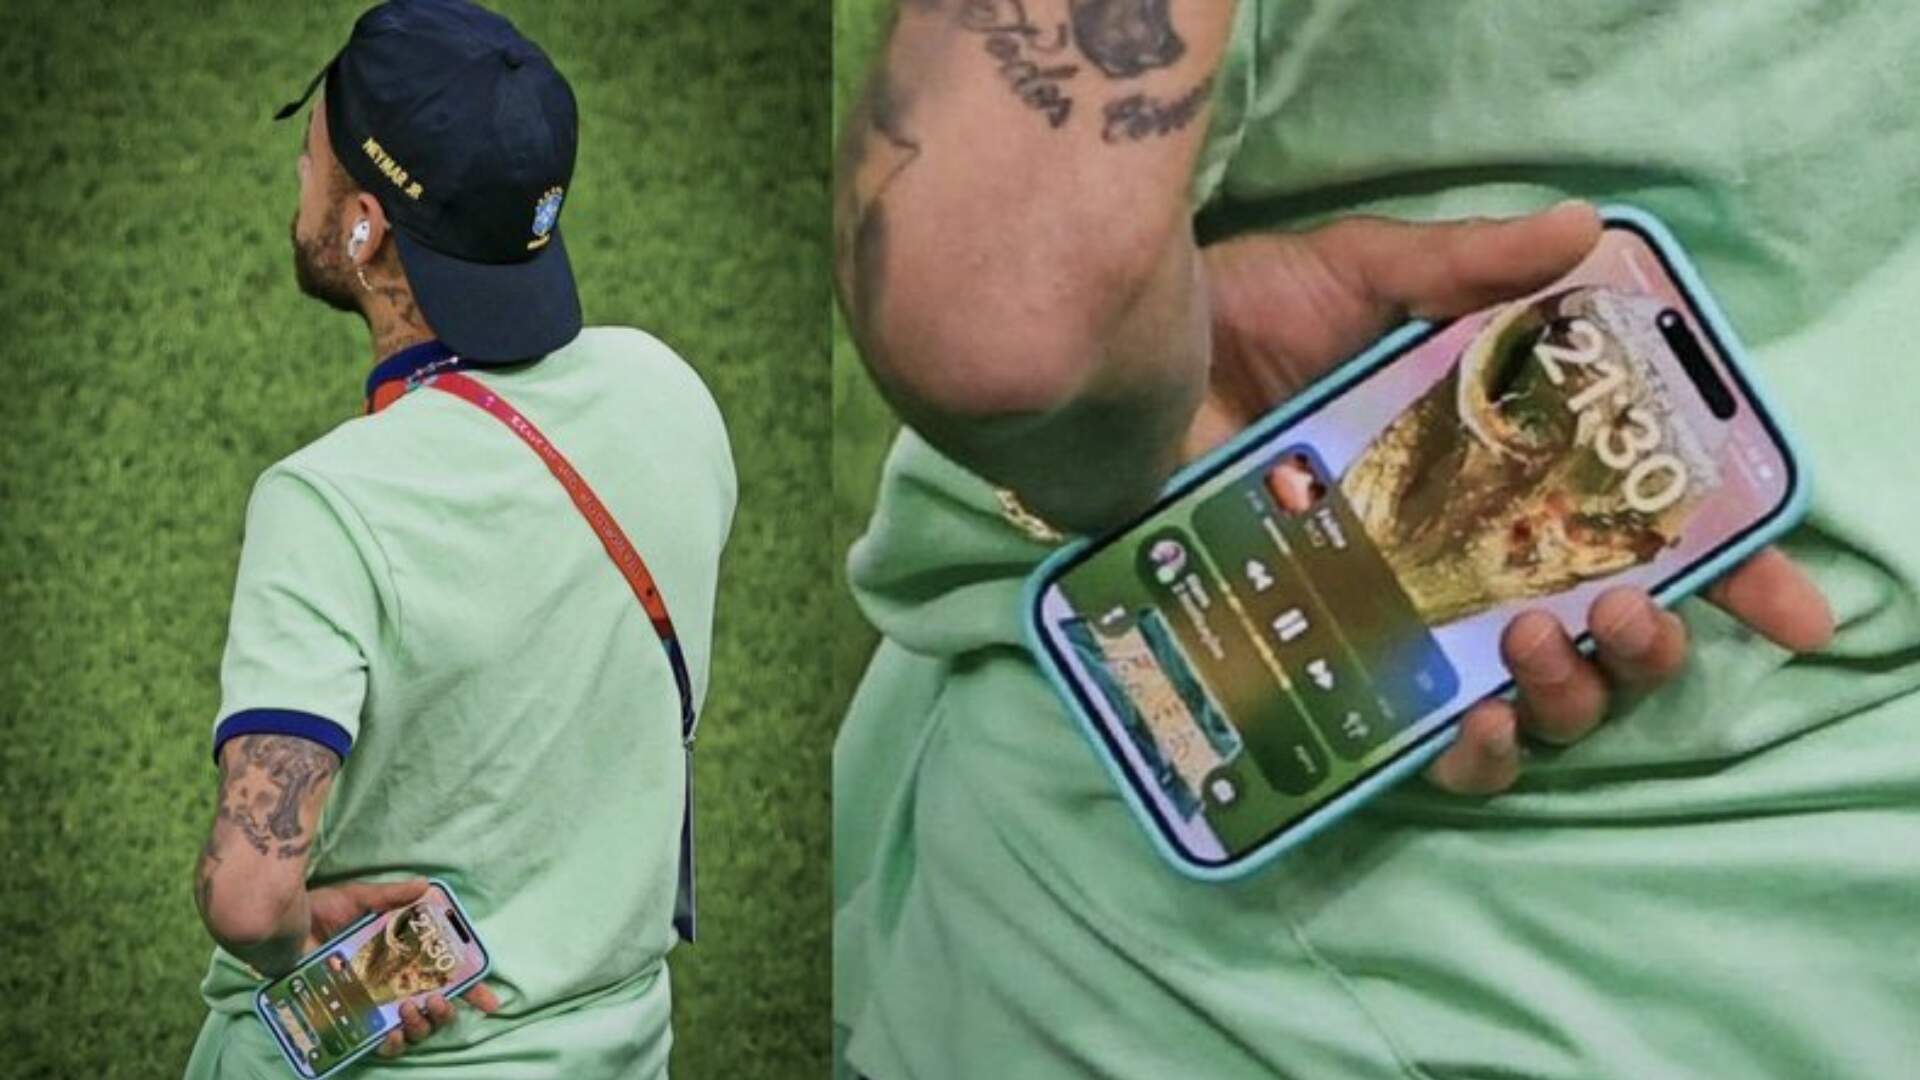 Neymar deixa escapar mensagem na tela do celular e agita web: “Bruna?” - Metropolitana FM